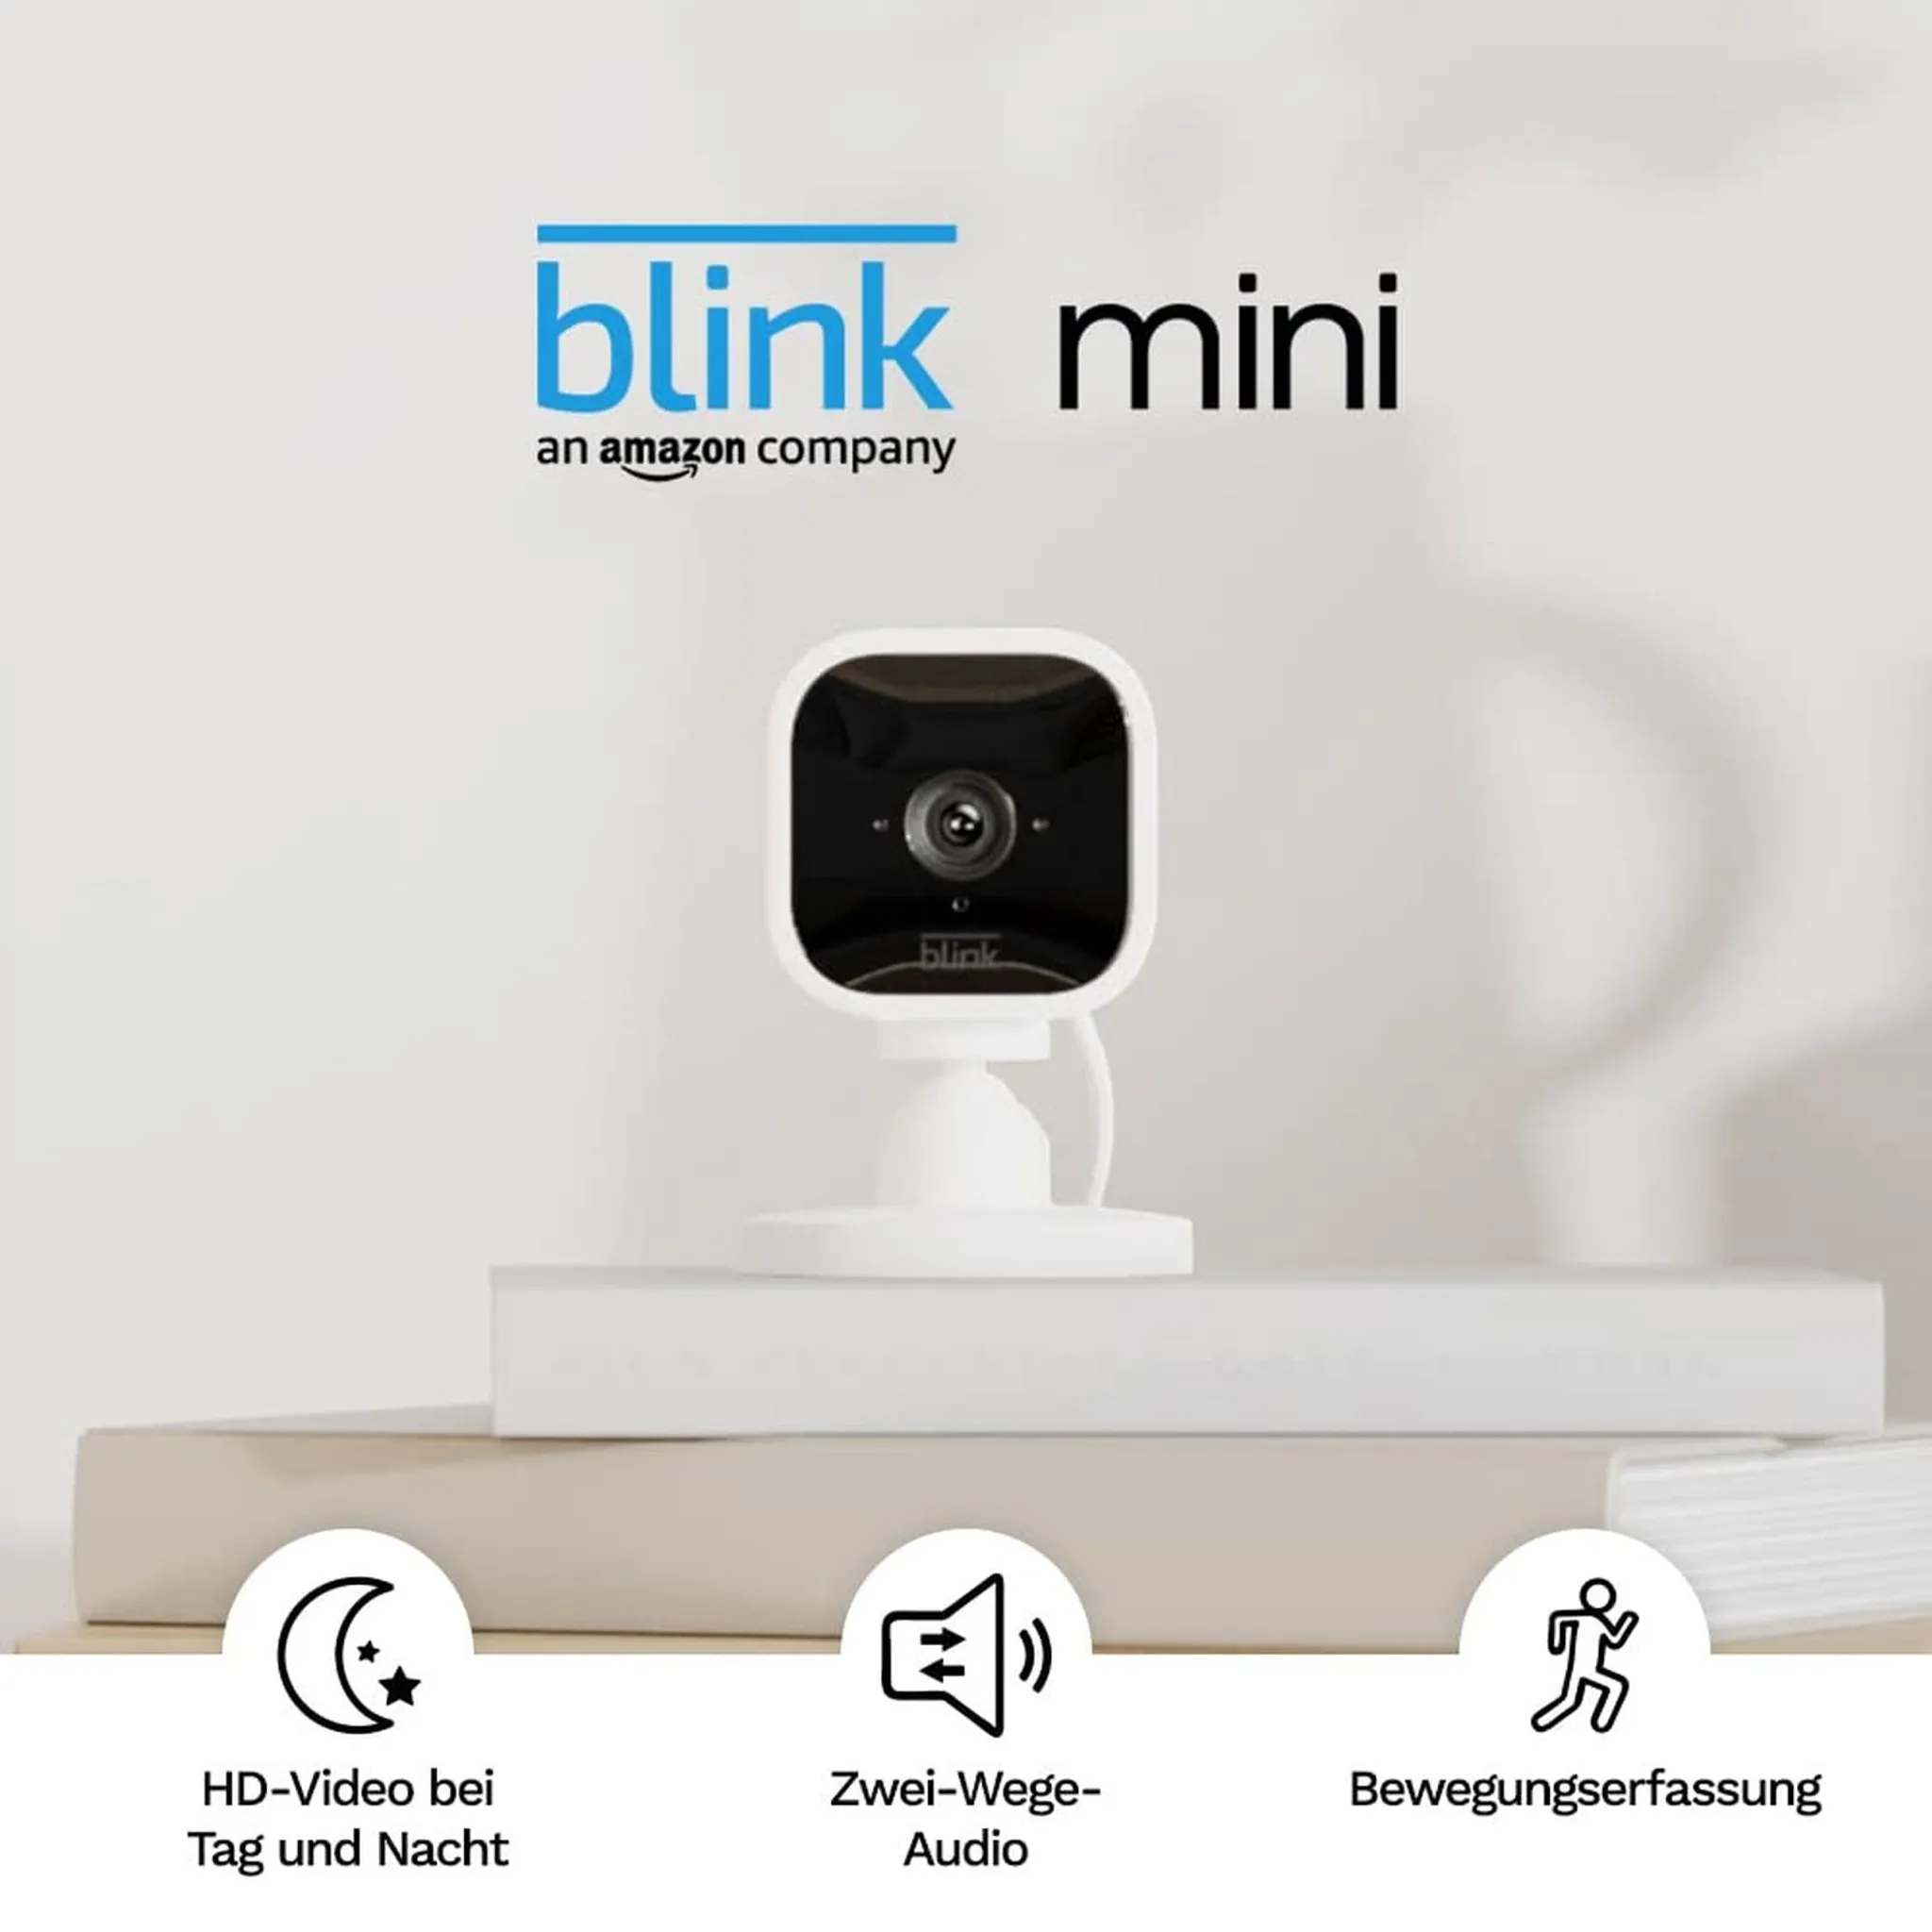 Blink Mini – Kompakte, smarte Plug-in-Sicherheitskamera für innen